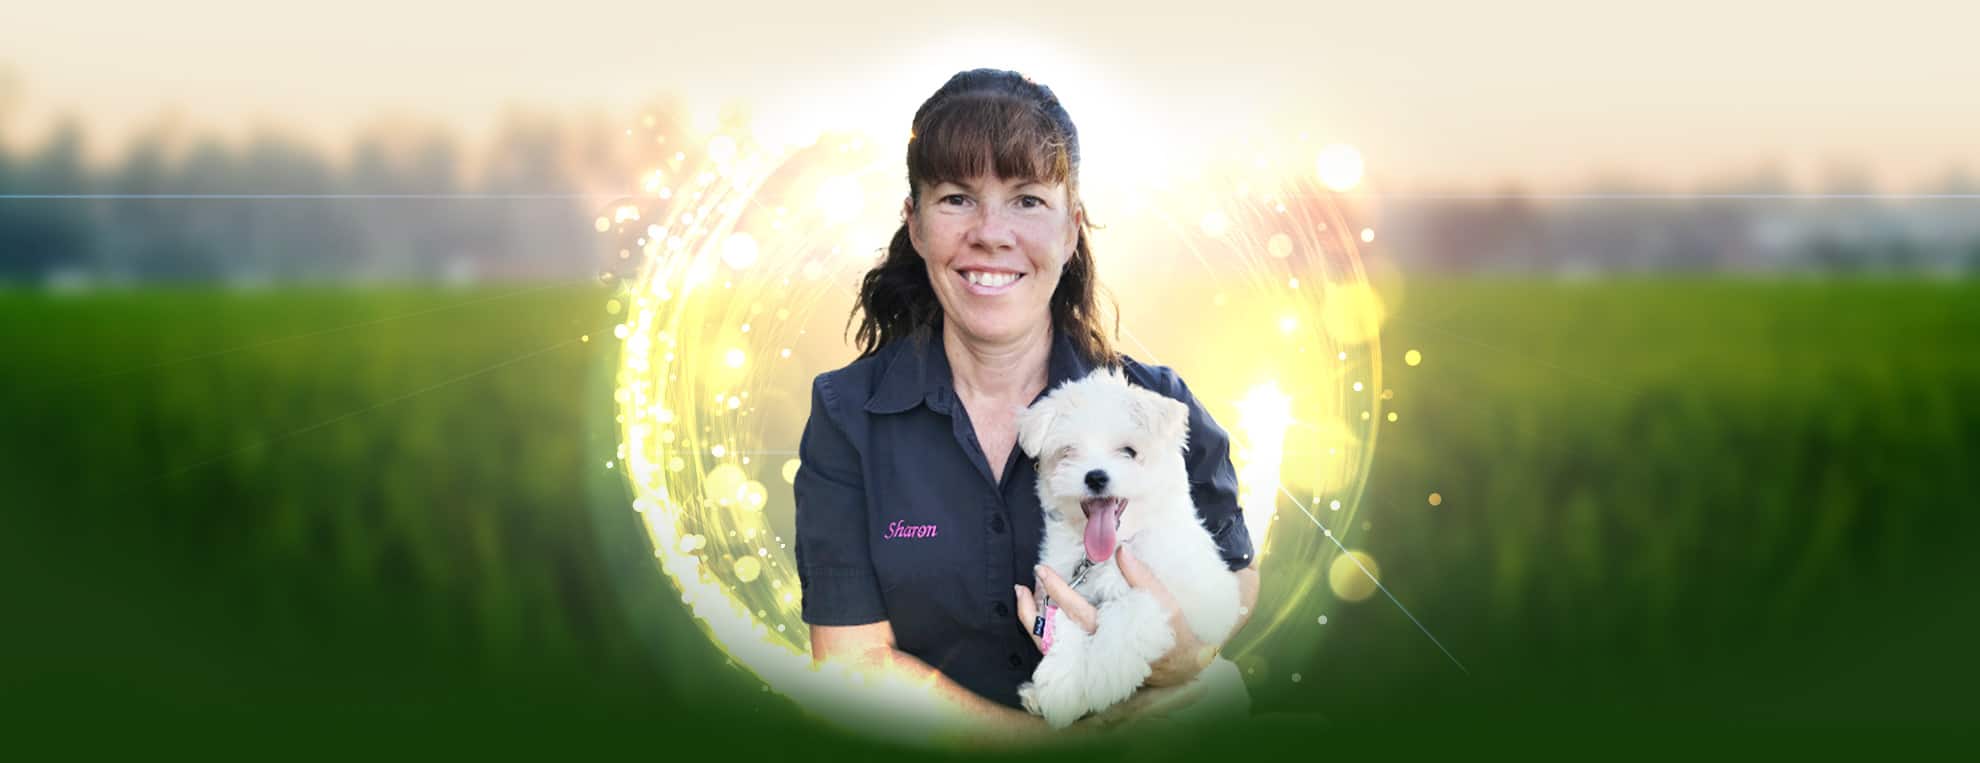 Sharon Mills puppy trainer